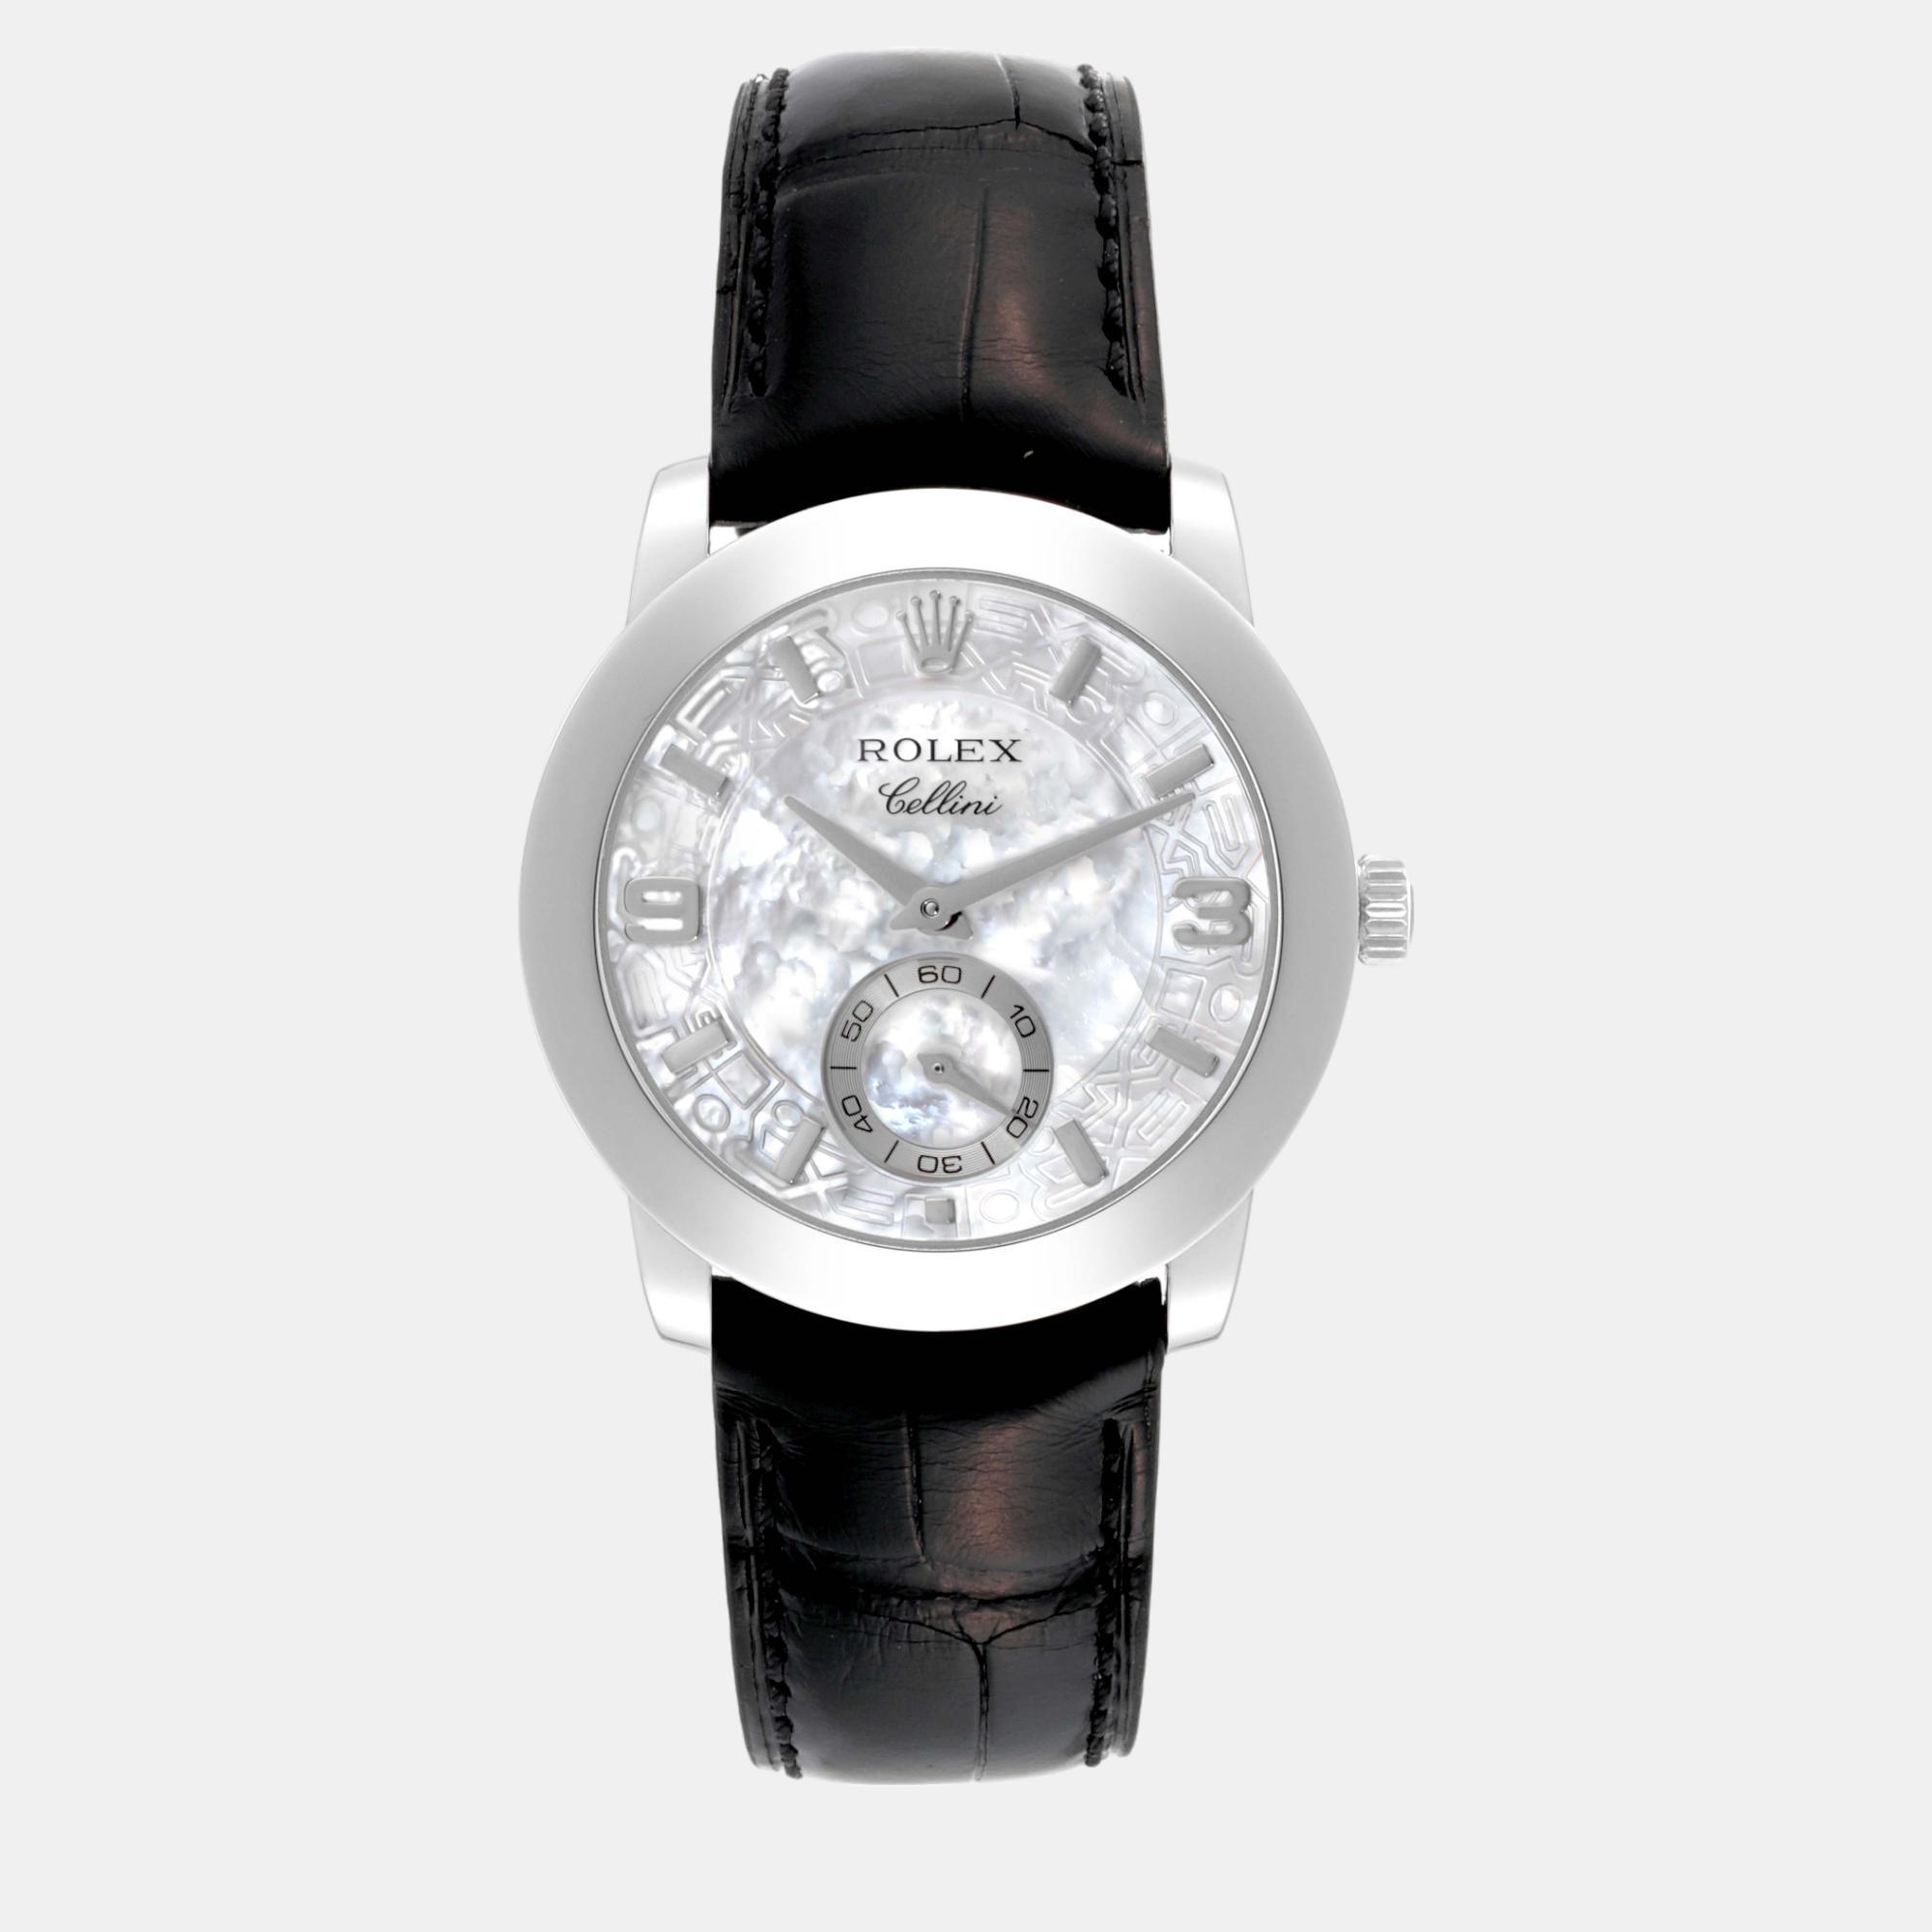 Rolex cellini cellinium platinum mother of pearl dial men's watch 35 mm